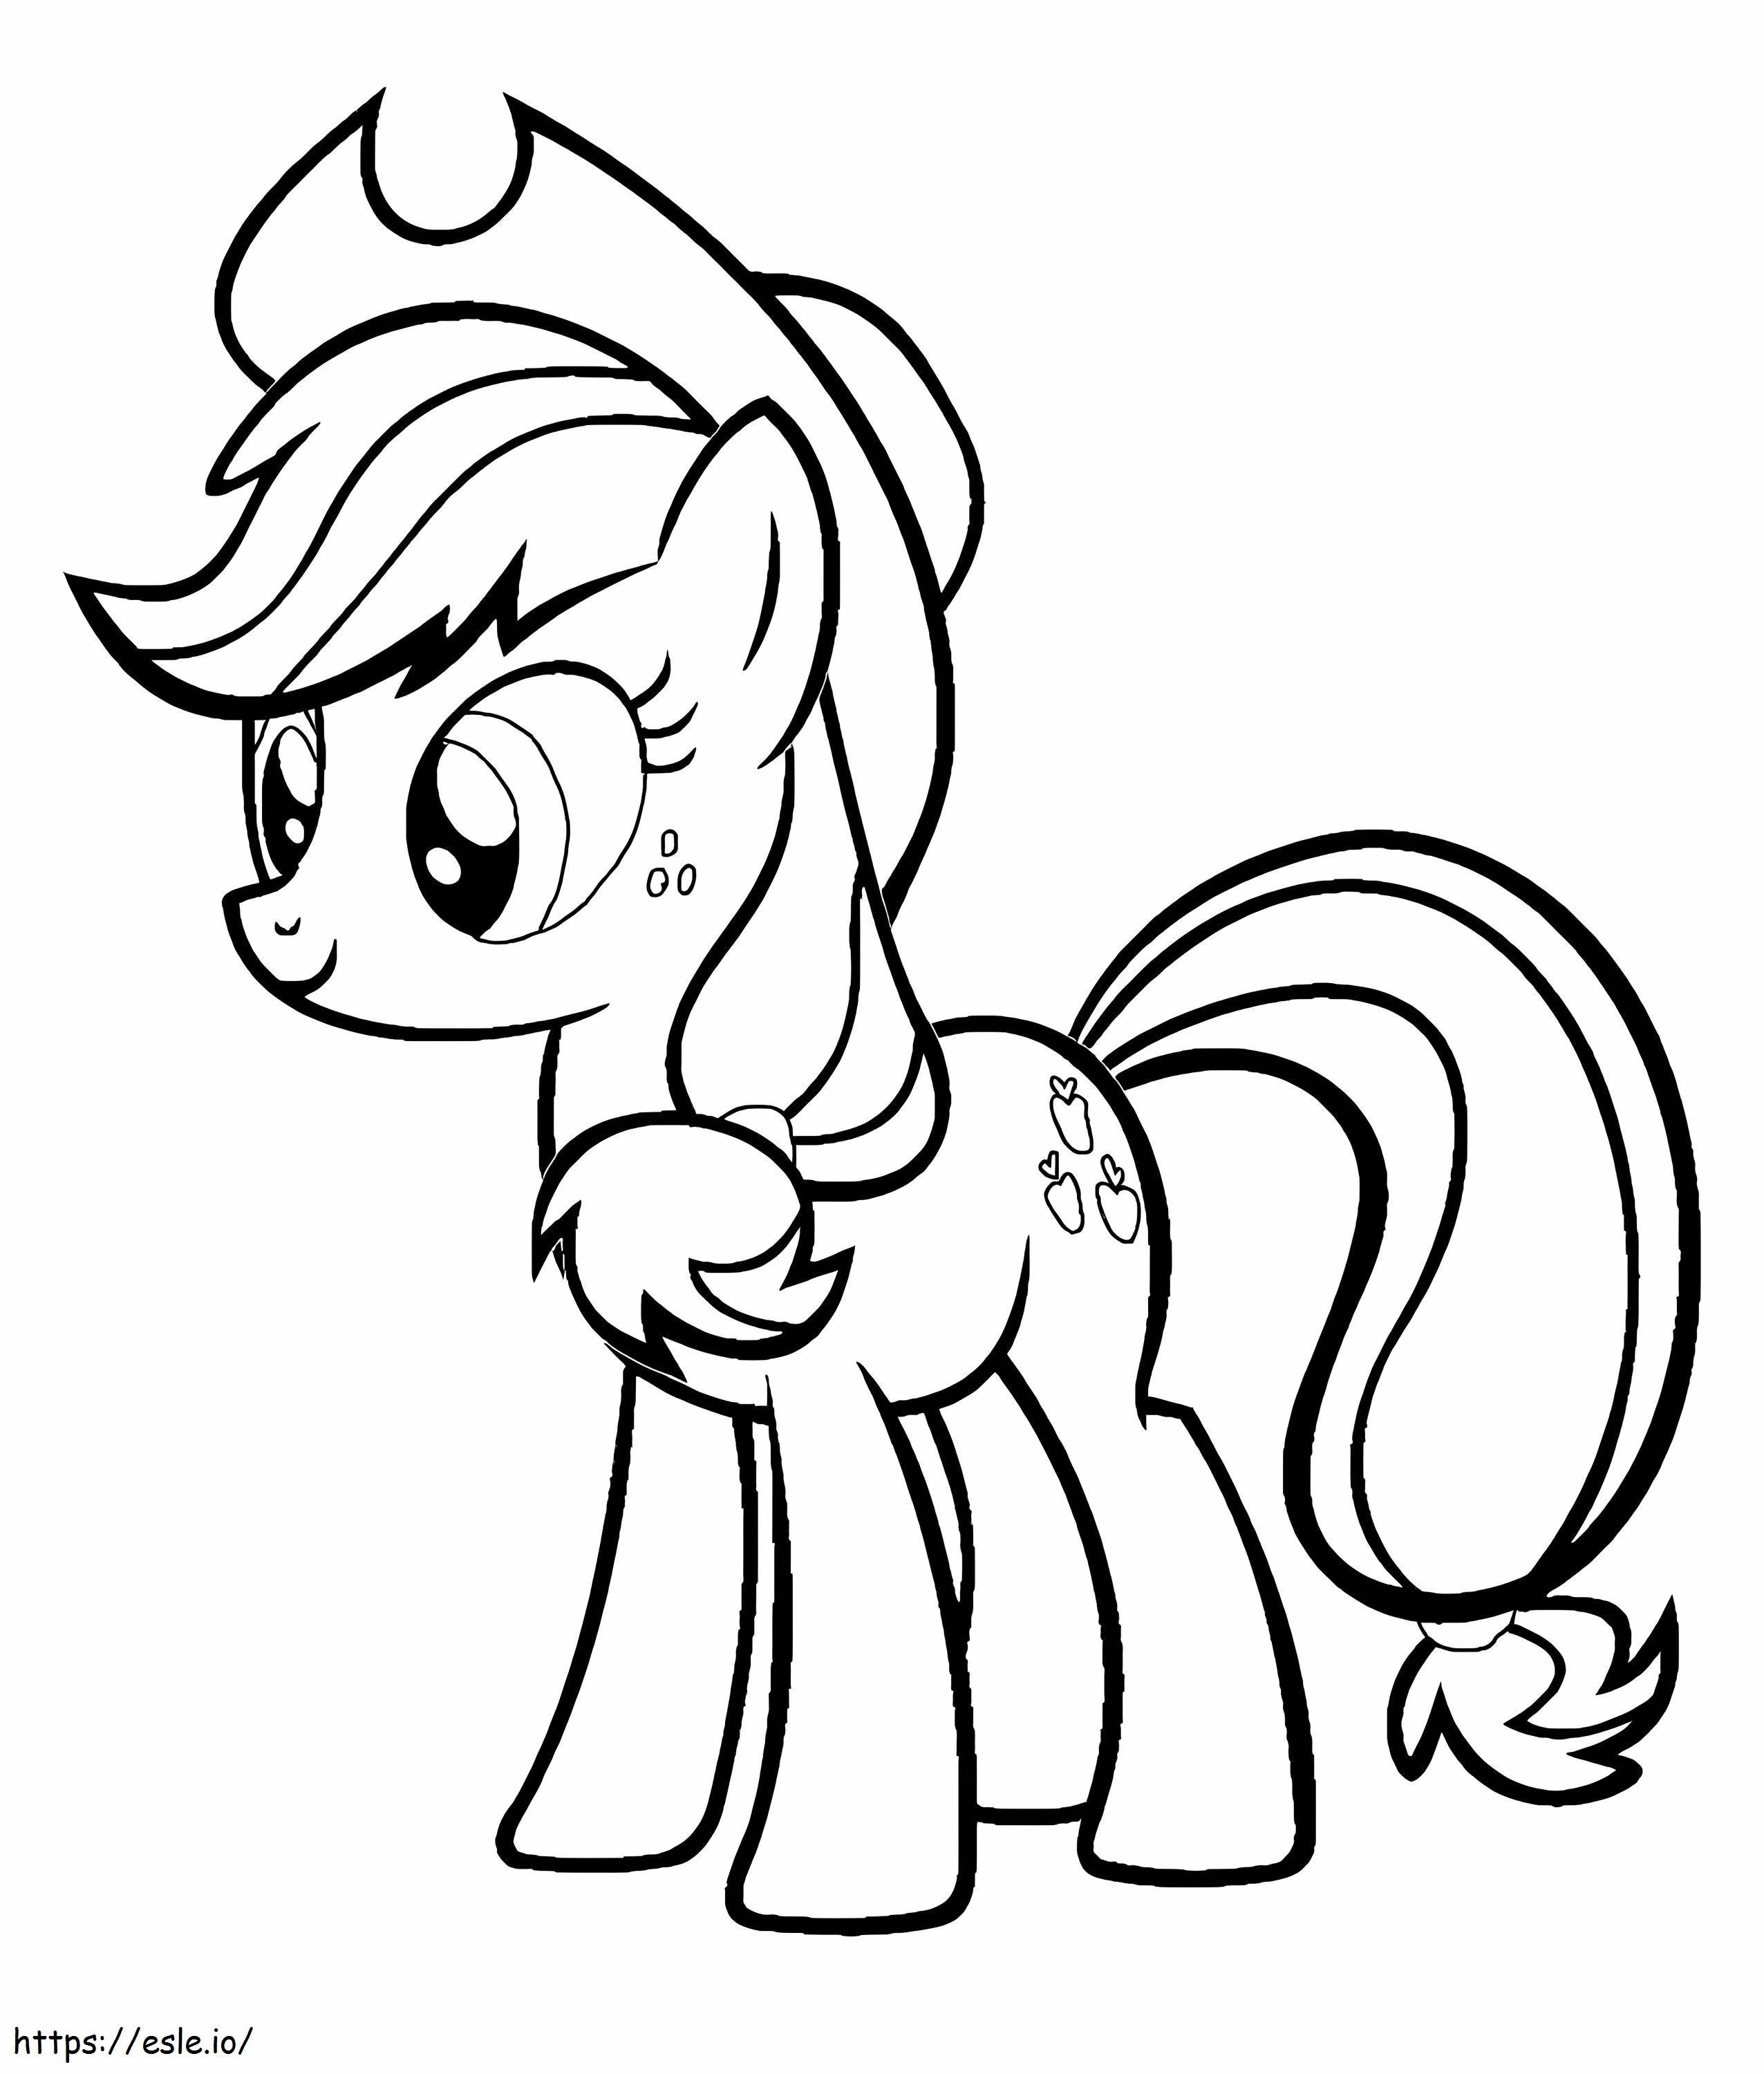 Applejack z My Little Pony kolorowanka